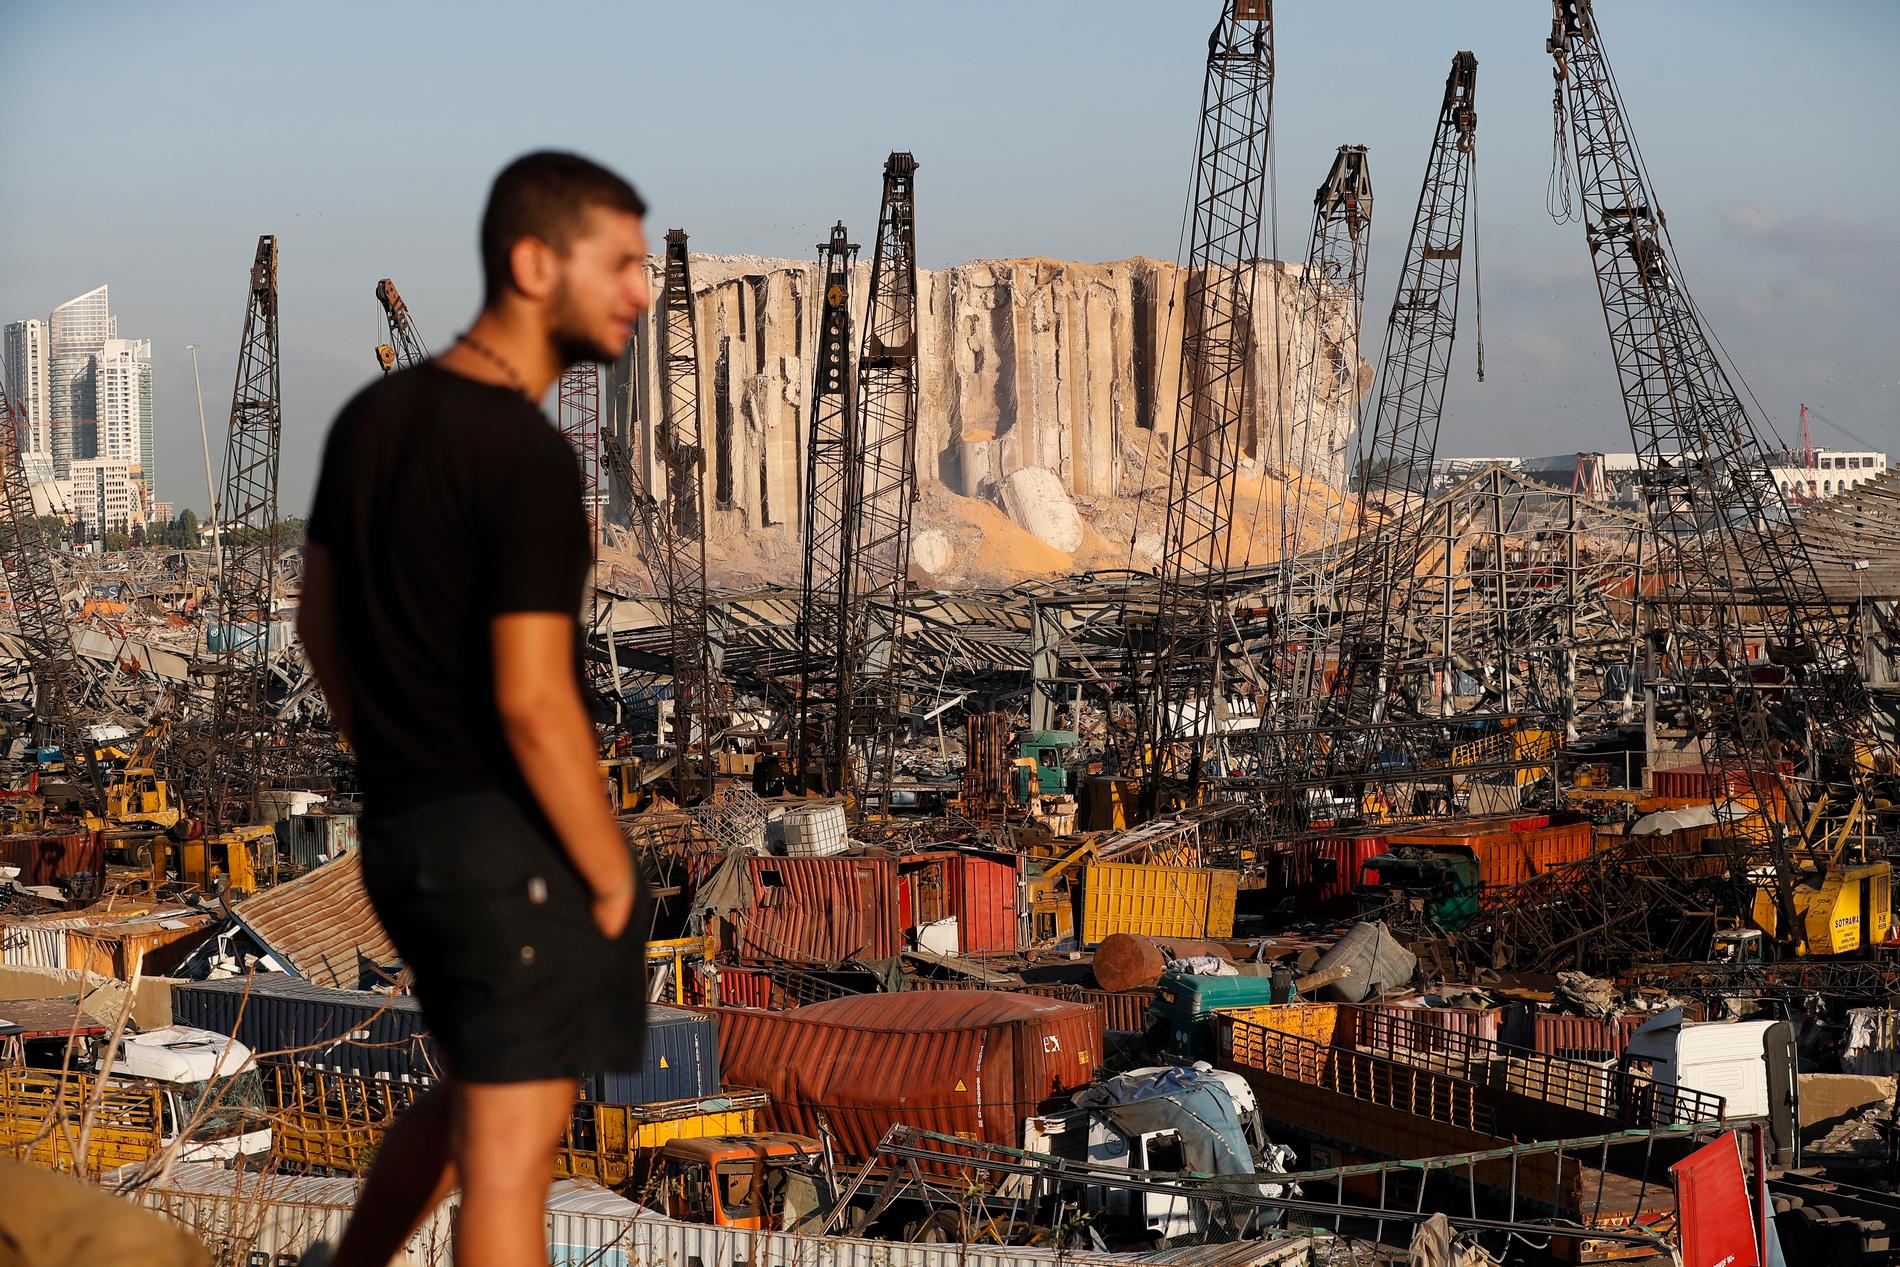 En man blickar ut över förödelsen efter tisdagens explosioner som förstörde stora delar av Libanons huvudstad Beirut.